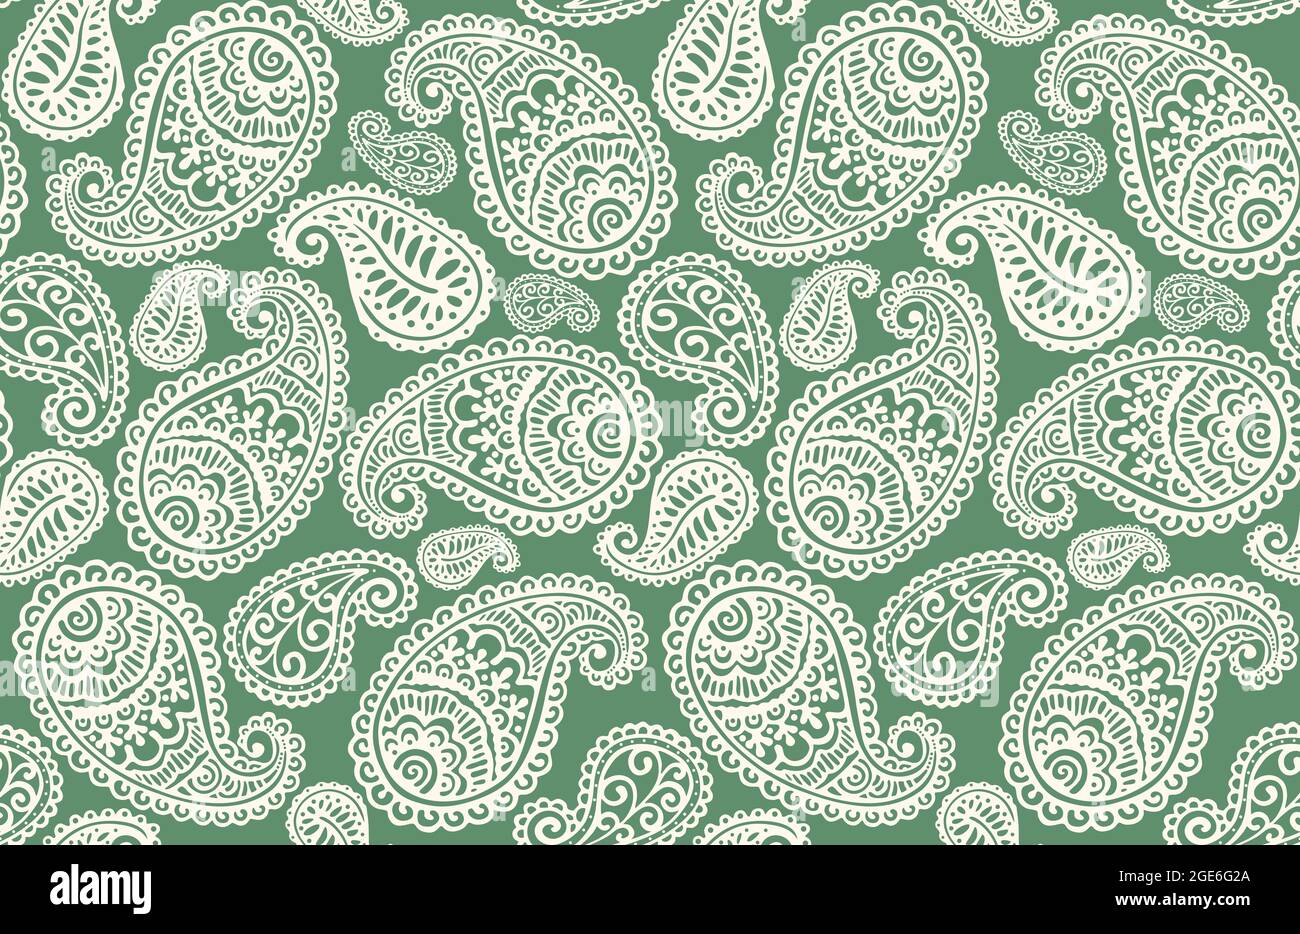 Seamless pattern with Paisley motifs Stock Photo